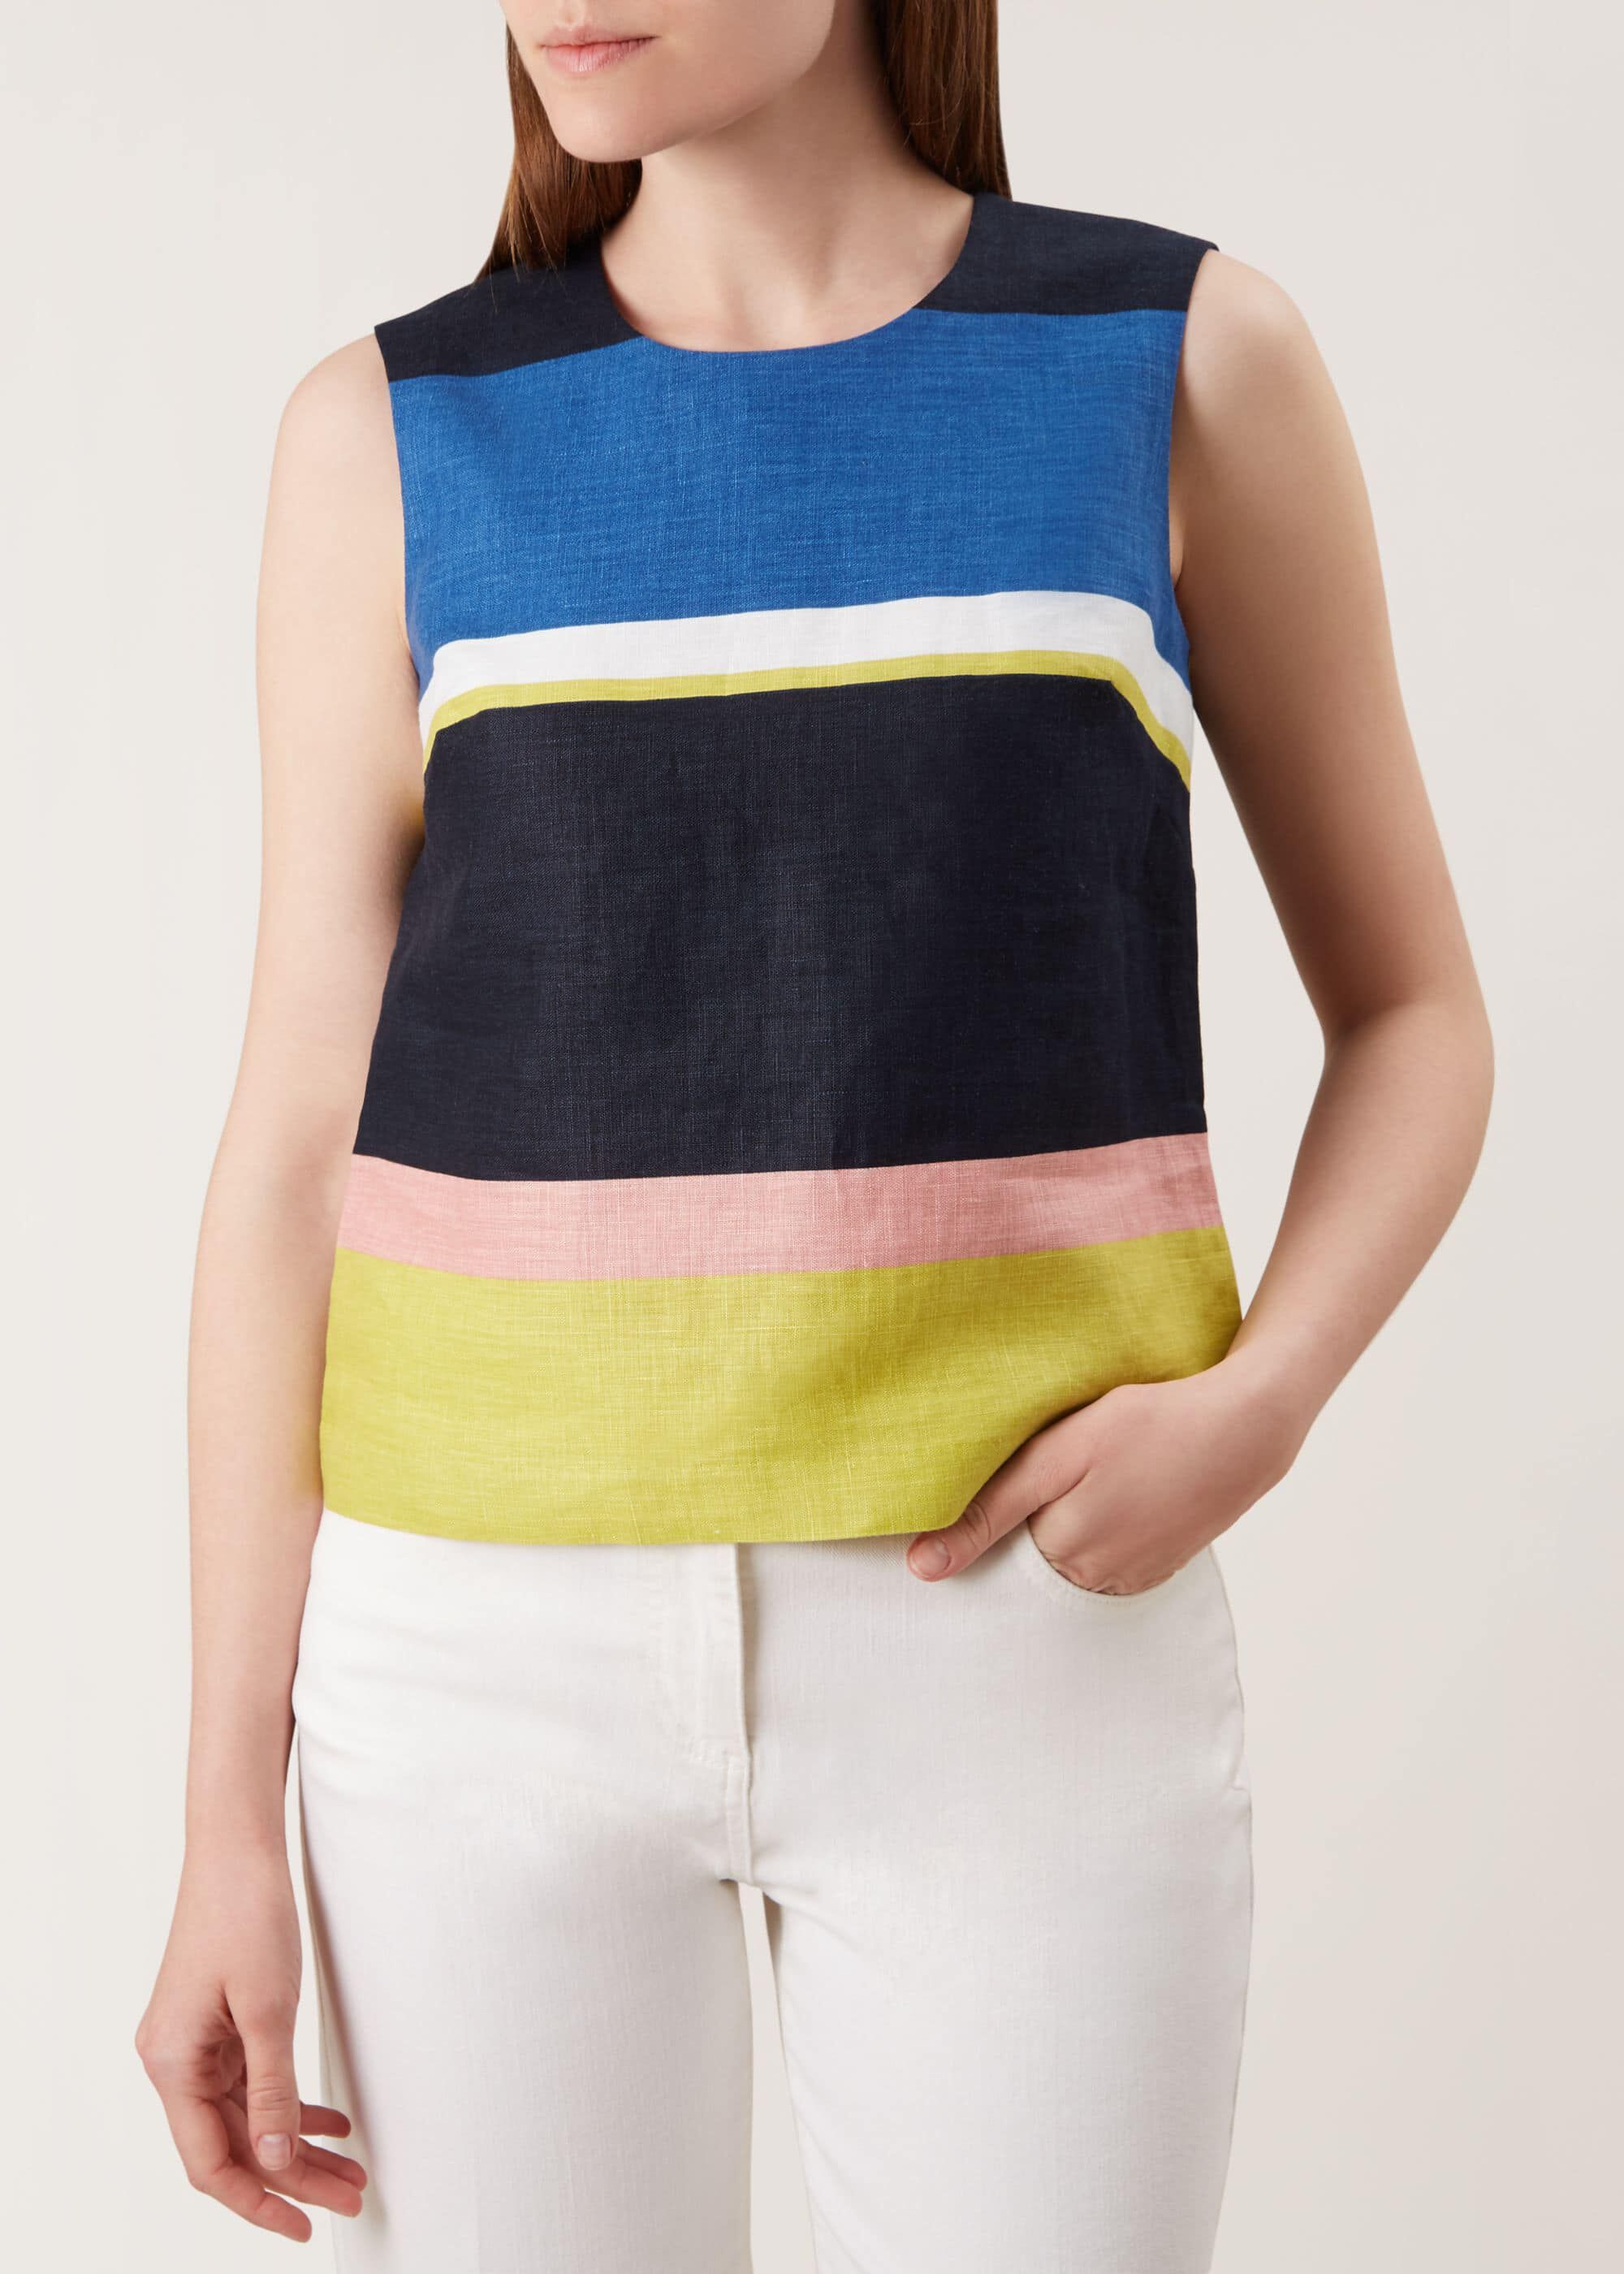 hobbs-striped-ives-linen-top-blouse-sleeveless-ebay